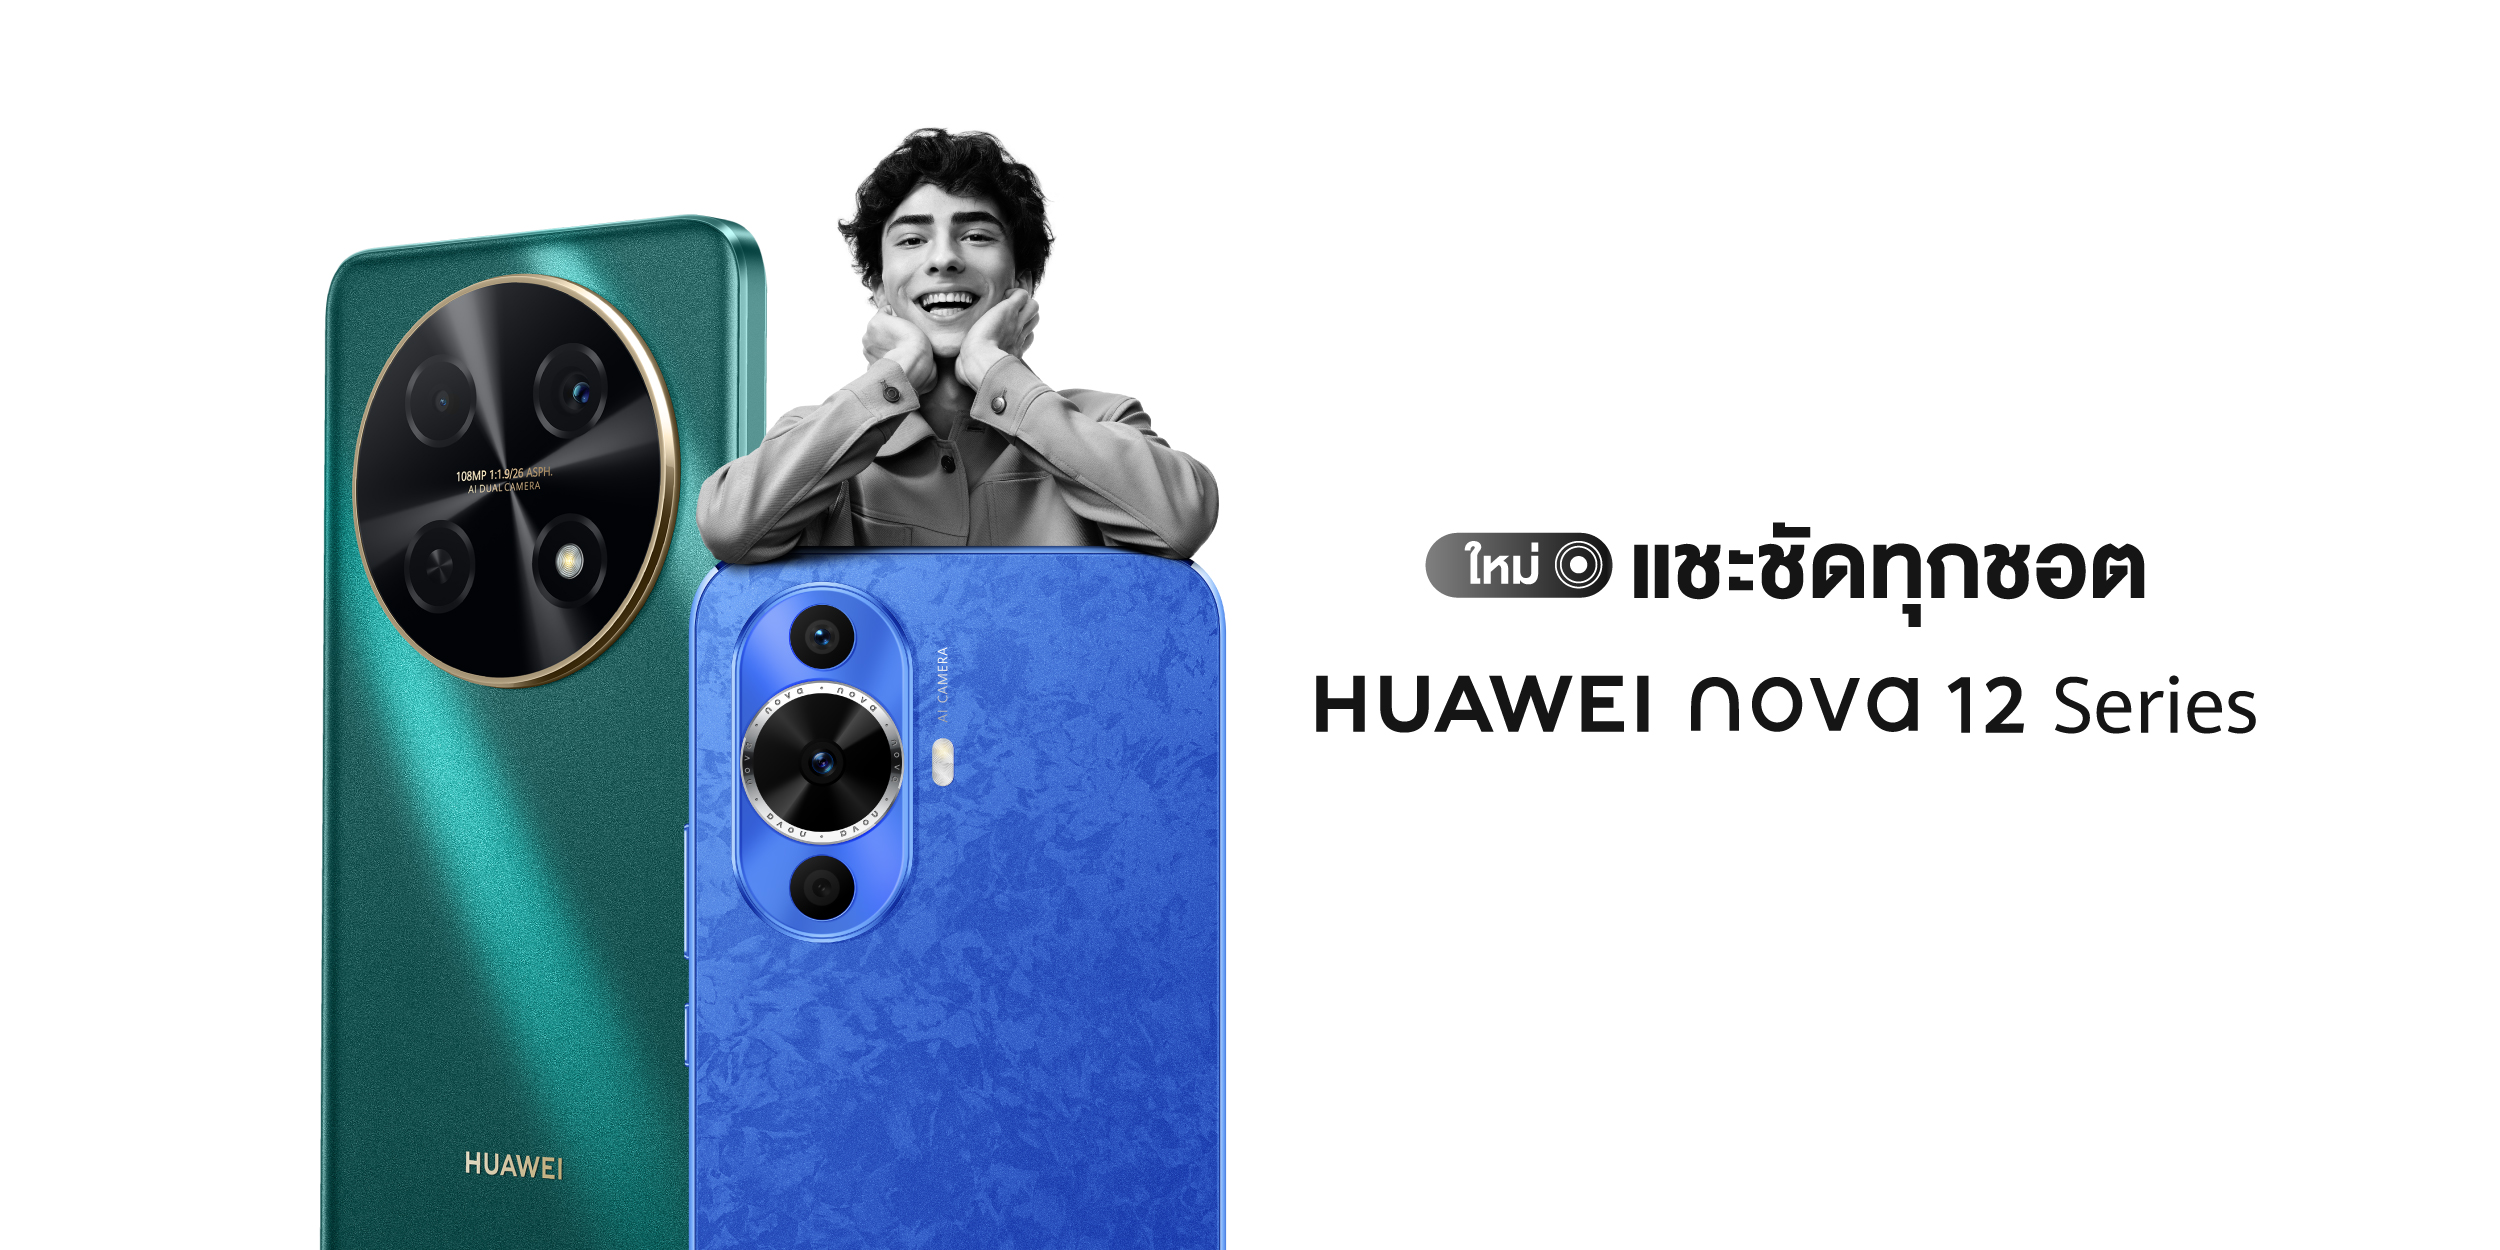 หัวเว่ย เปิดตัว HUAWEI nova 12 Series  สมาร์ทโฟนกล้องสวยระดับ Hi-res แชะชัดทุกชอต